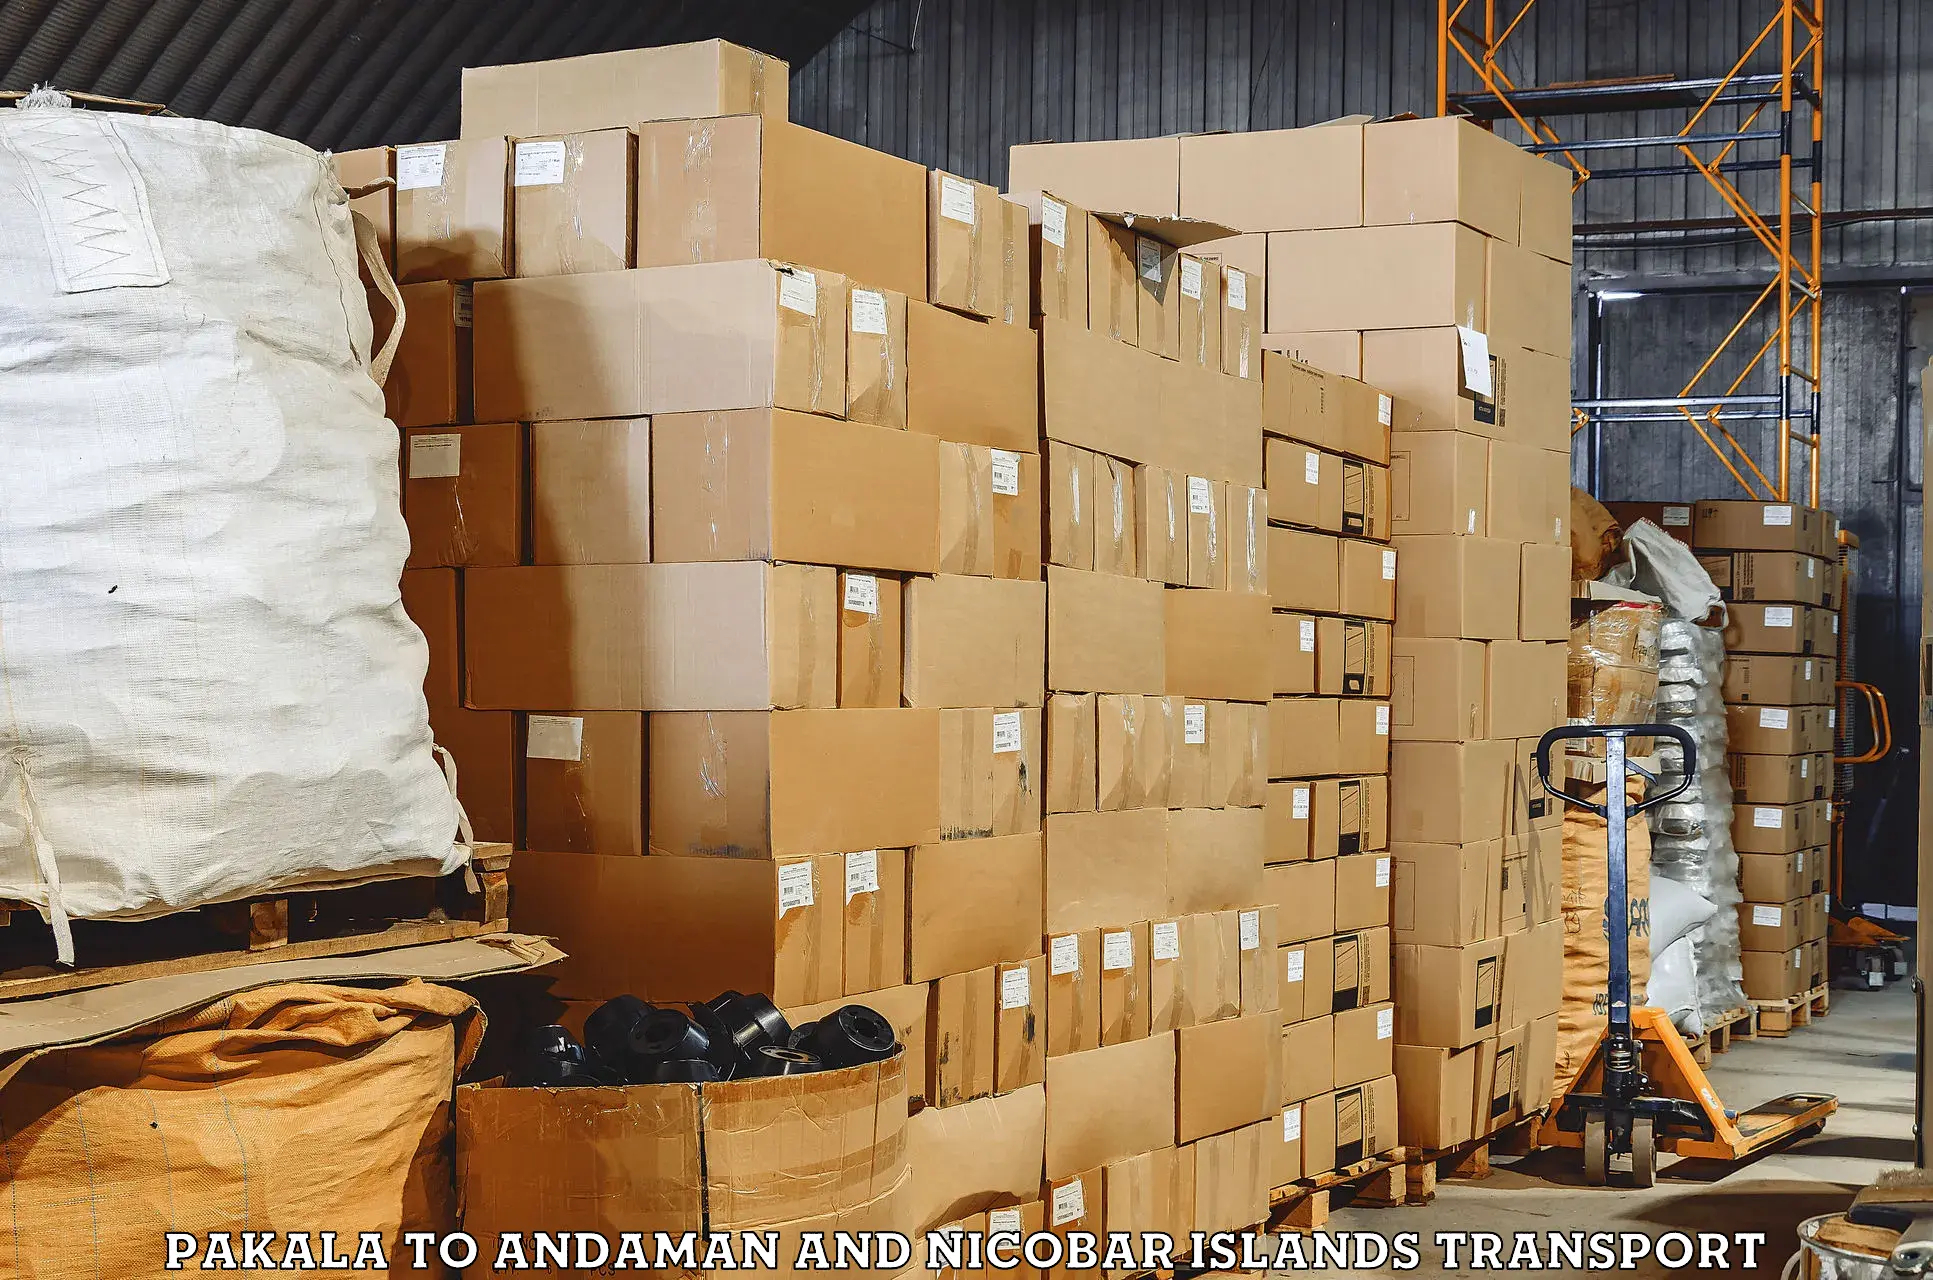 Air freight transport services Pakala to Andaman and Nicobar Islands